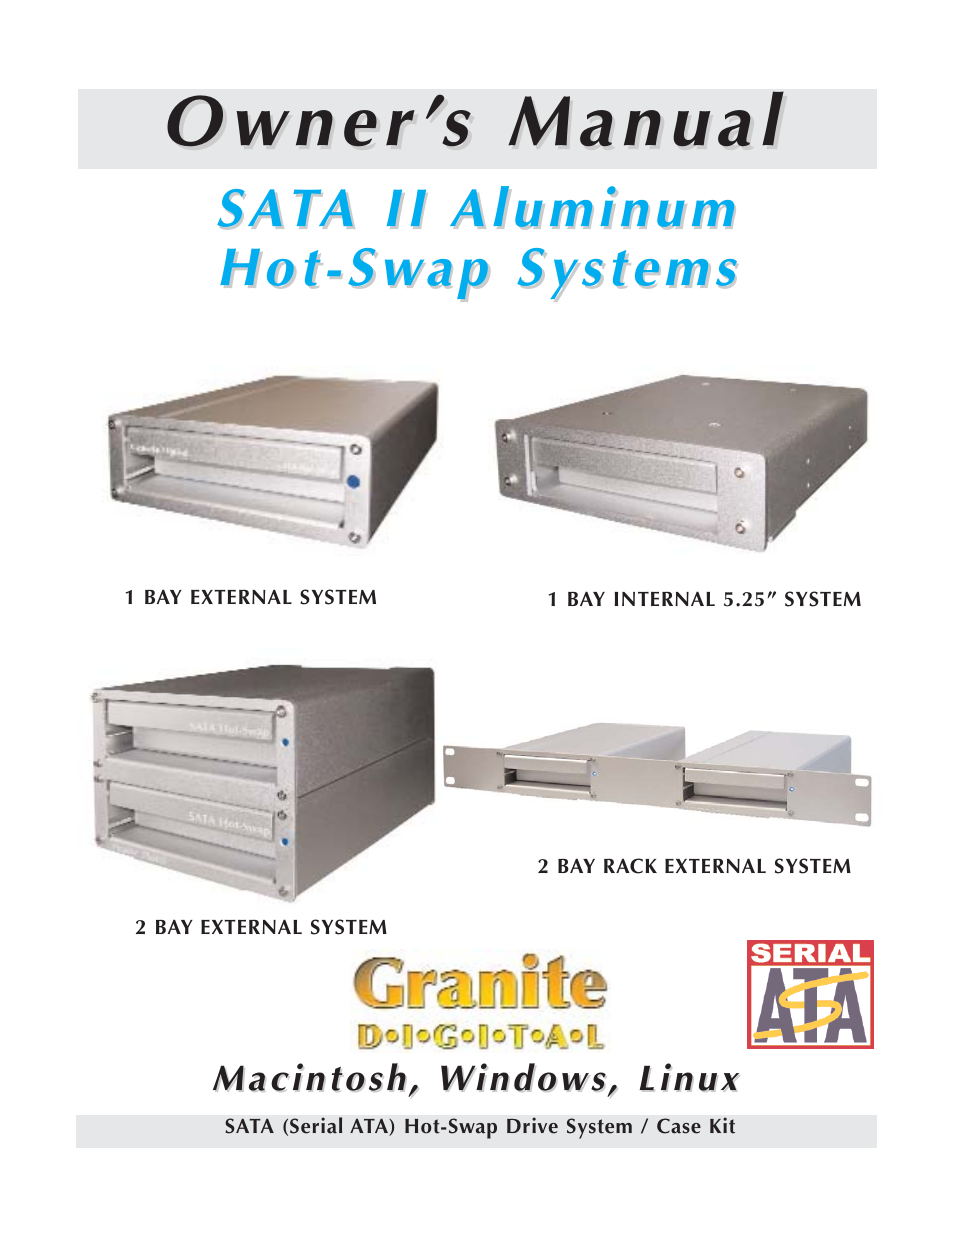 Granite Digital SATA 2 Bay Aluminum Series User Manual | 18 pages